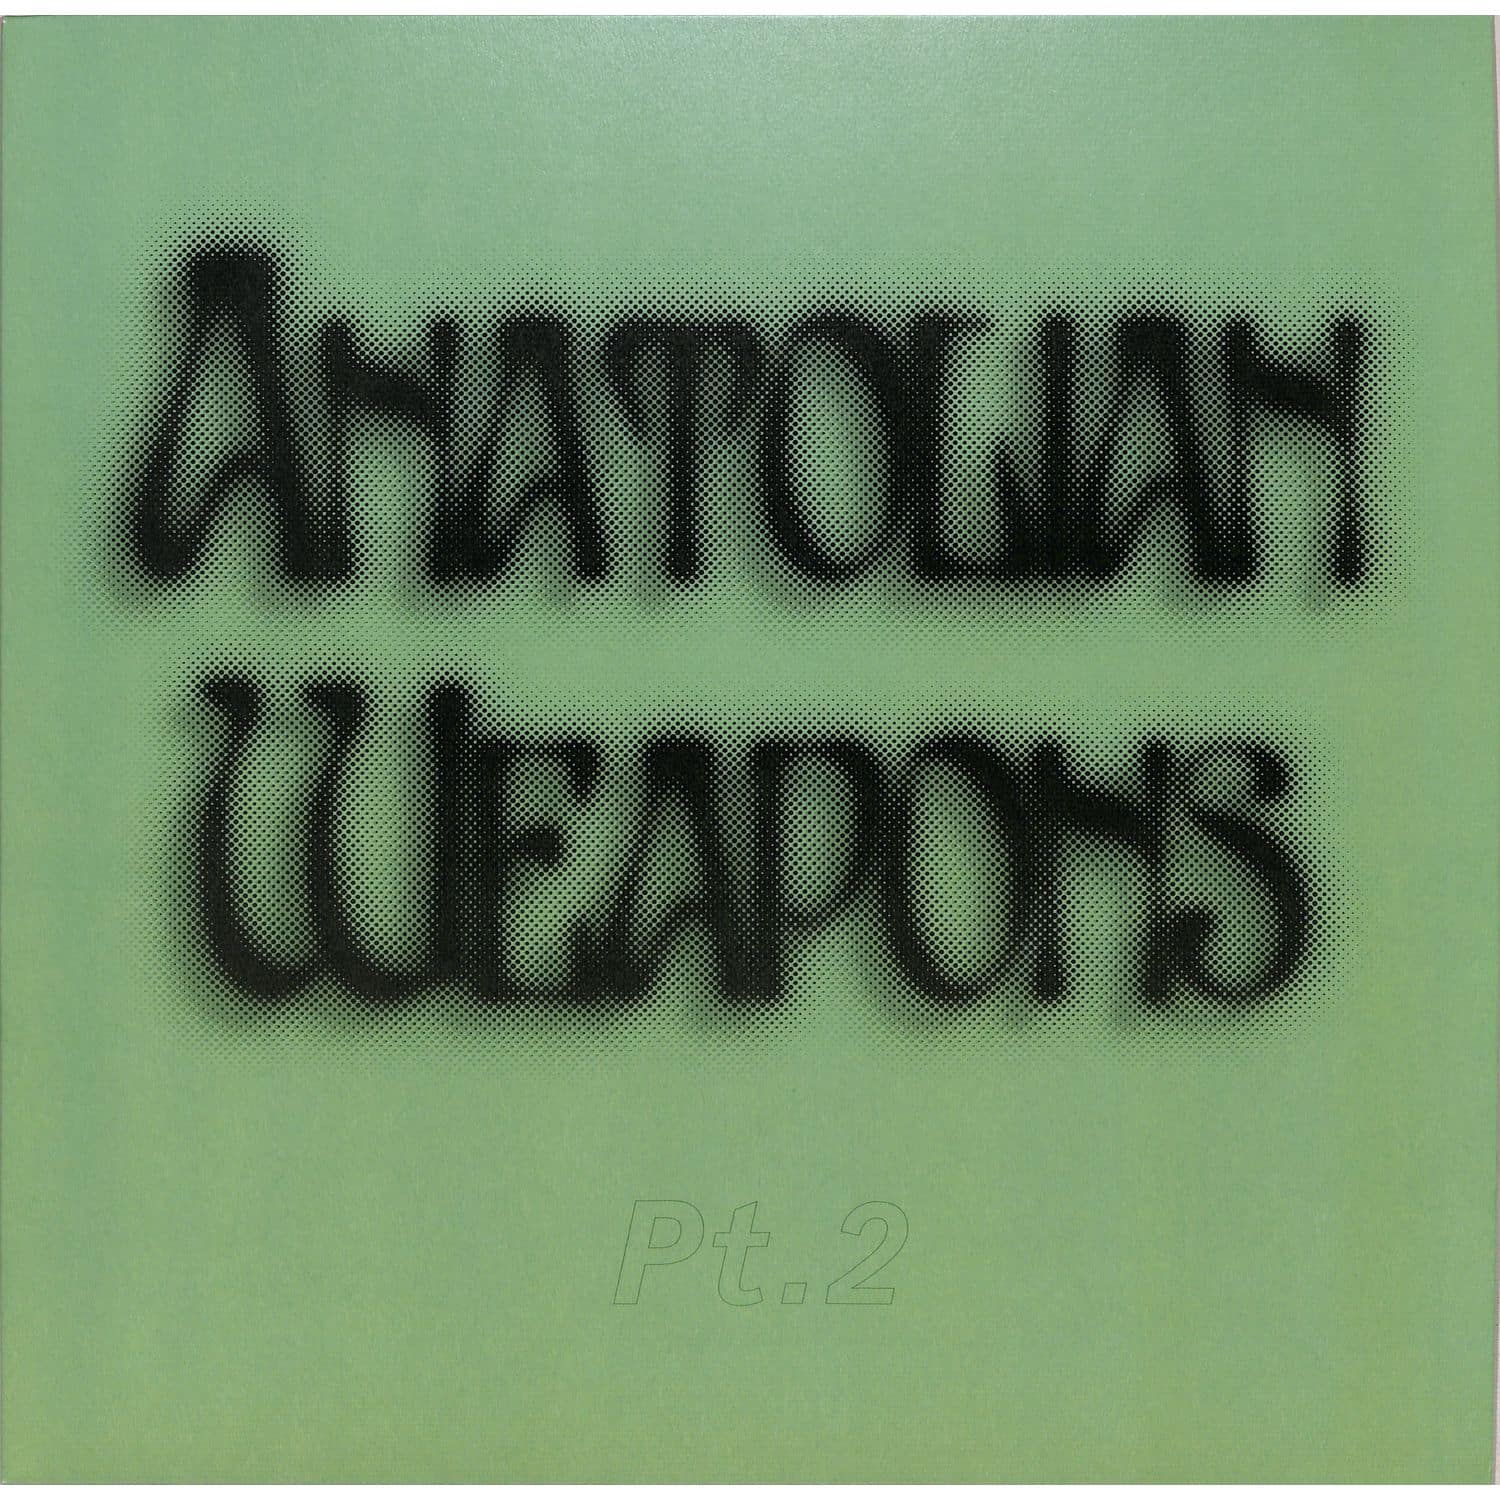 Anatolian Weapons - PT. 2